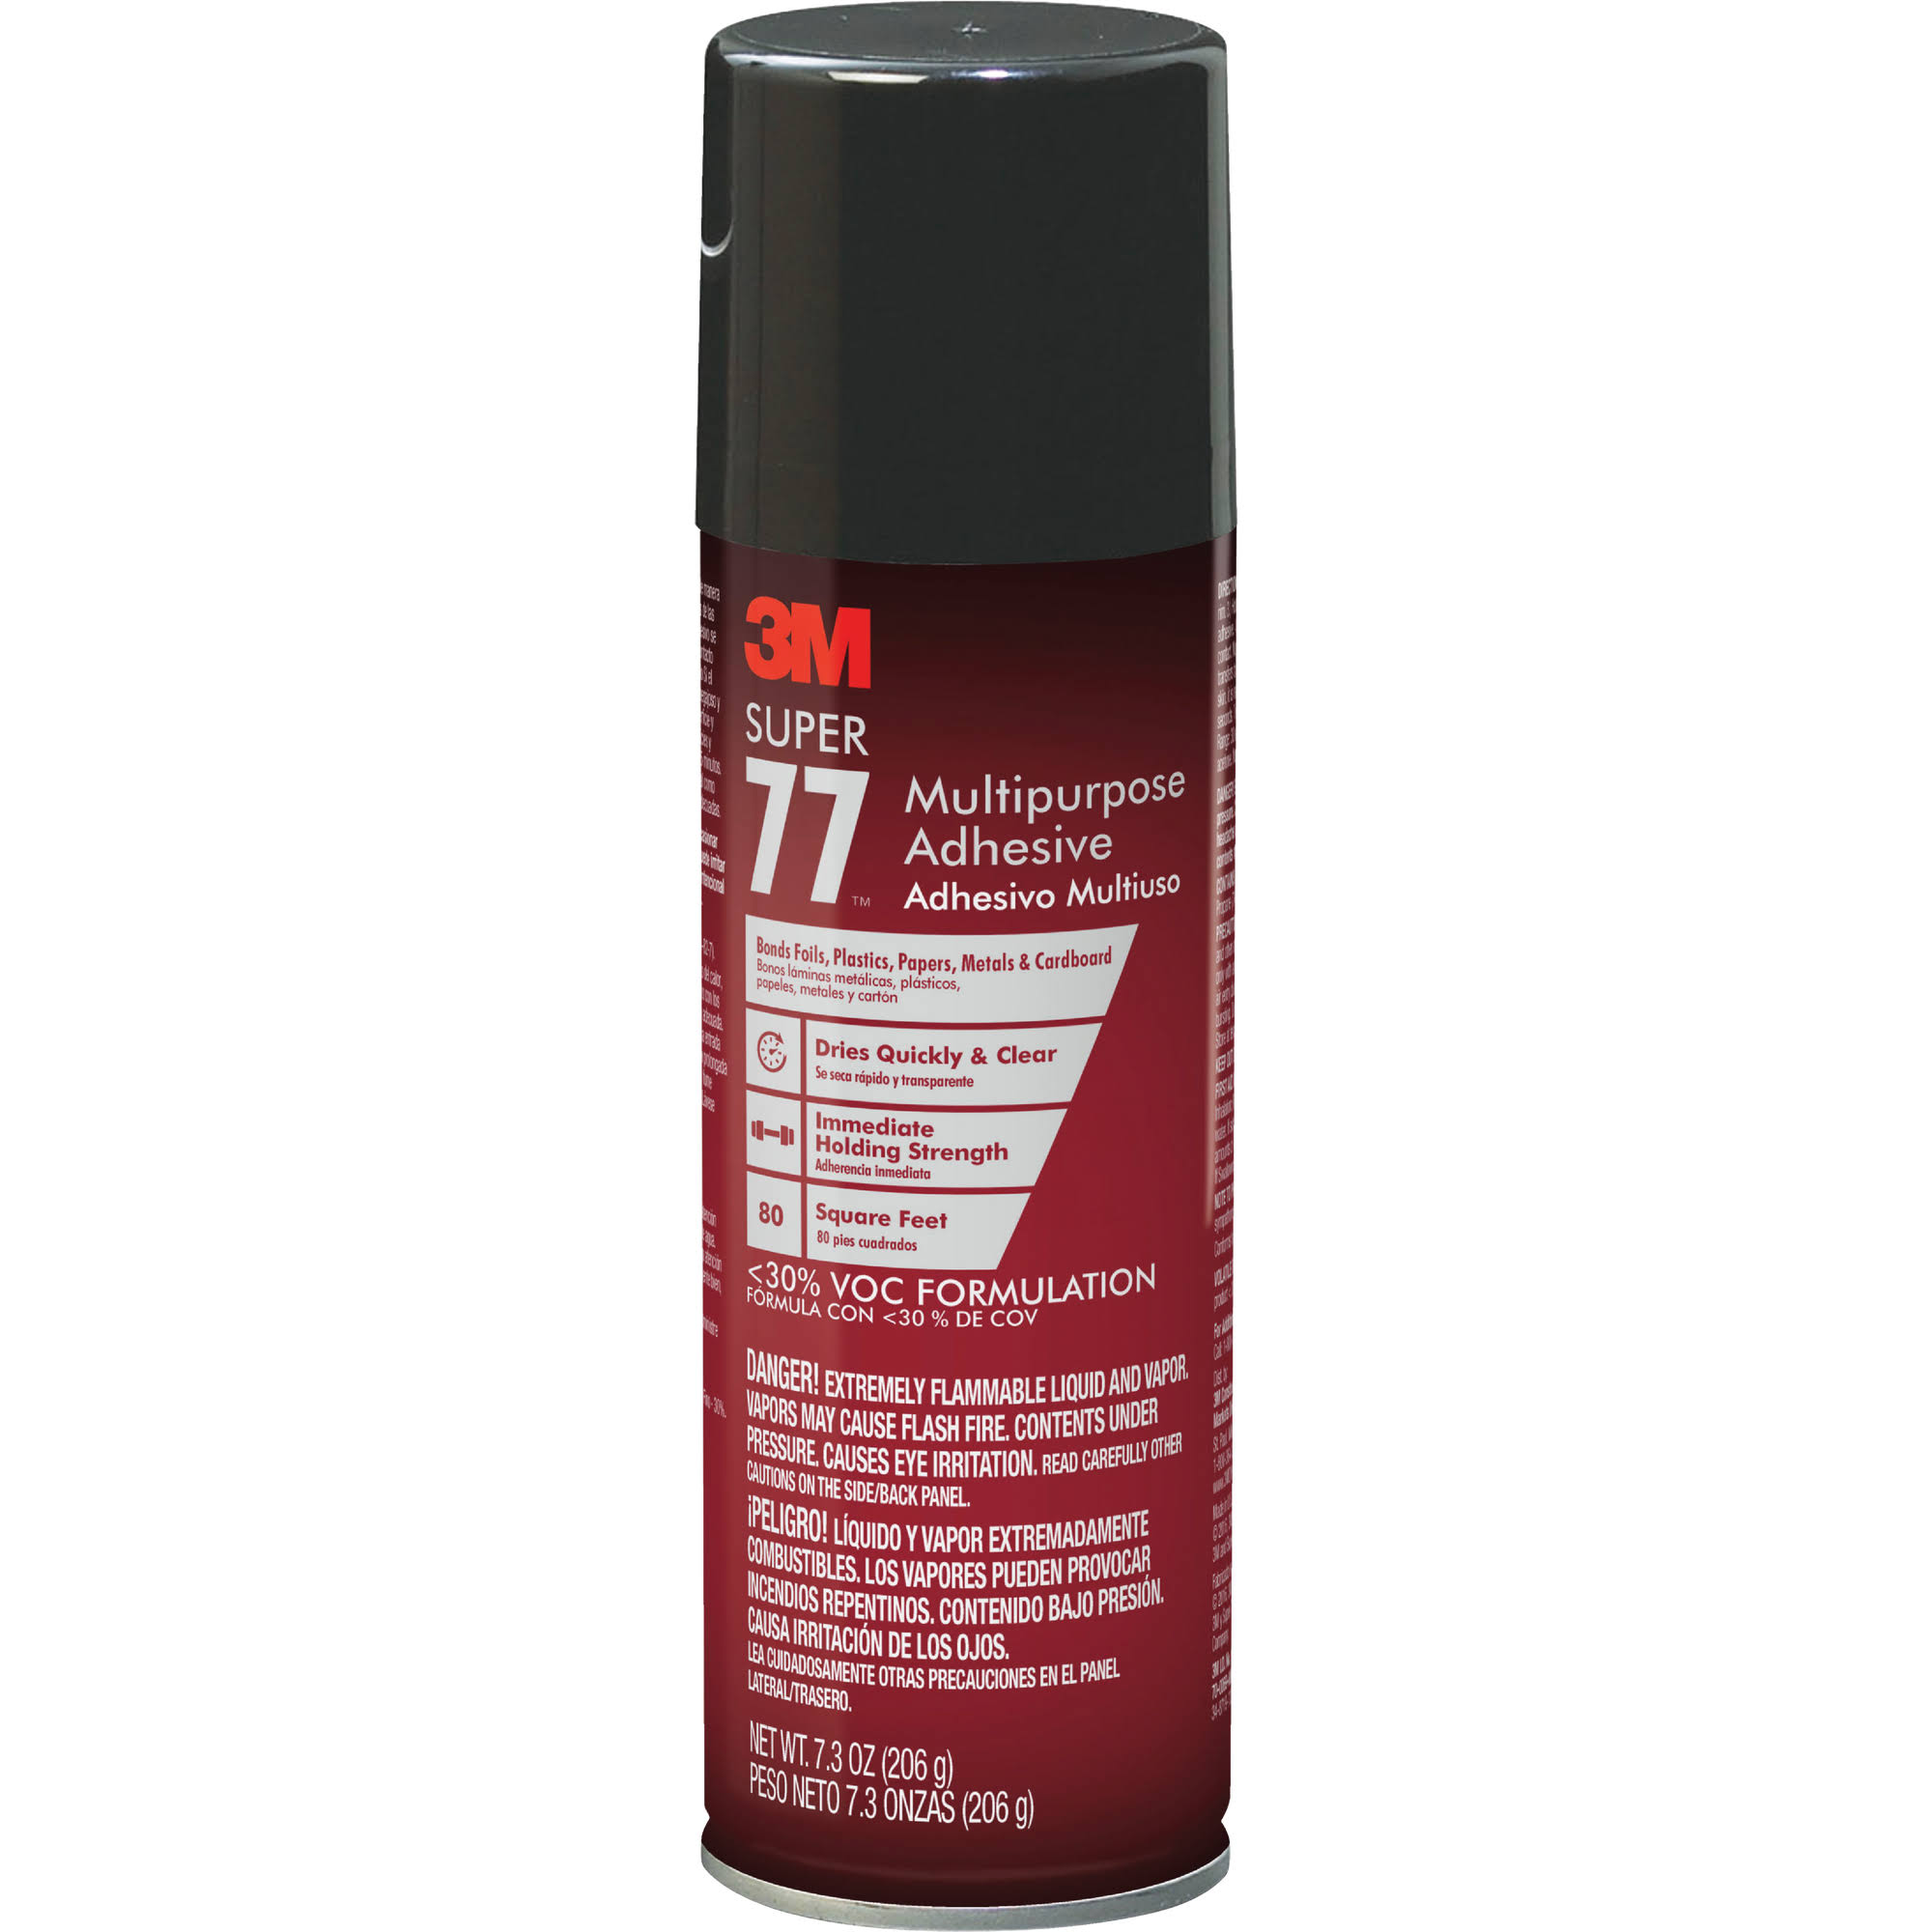 3M Super 77 Multupurpose Adhesive Spray - 7oz